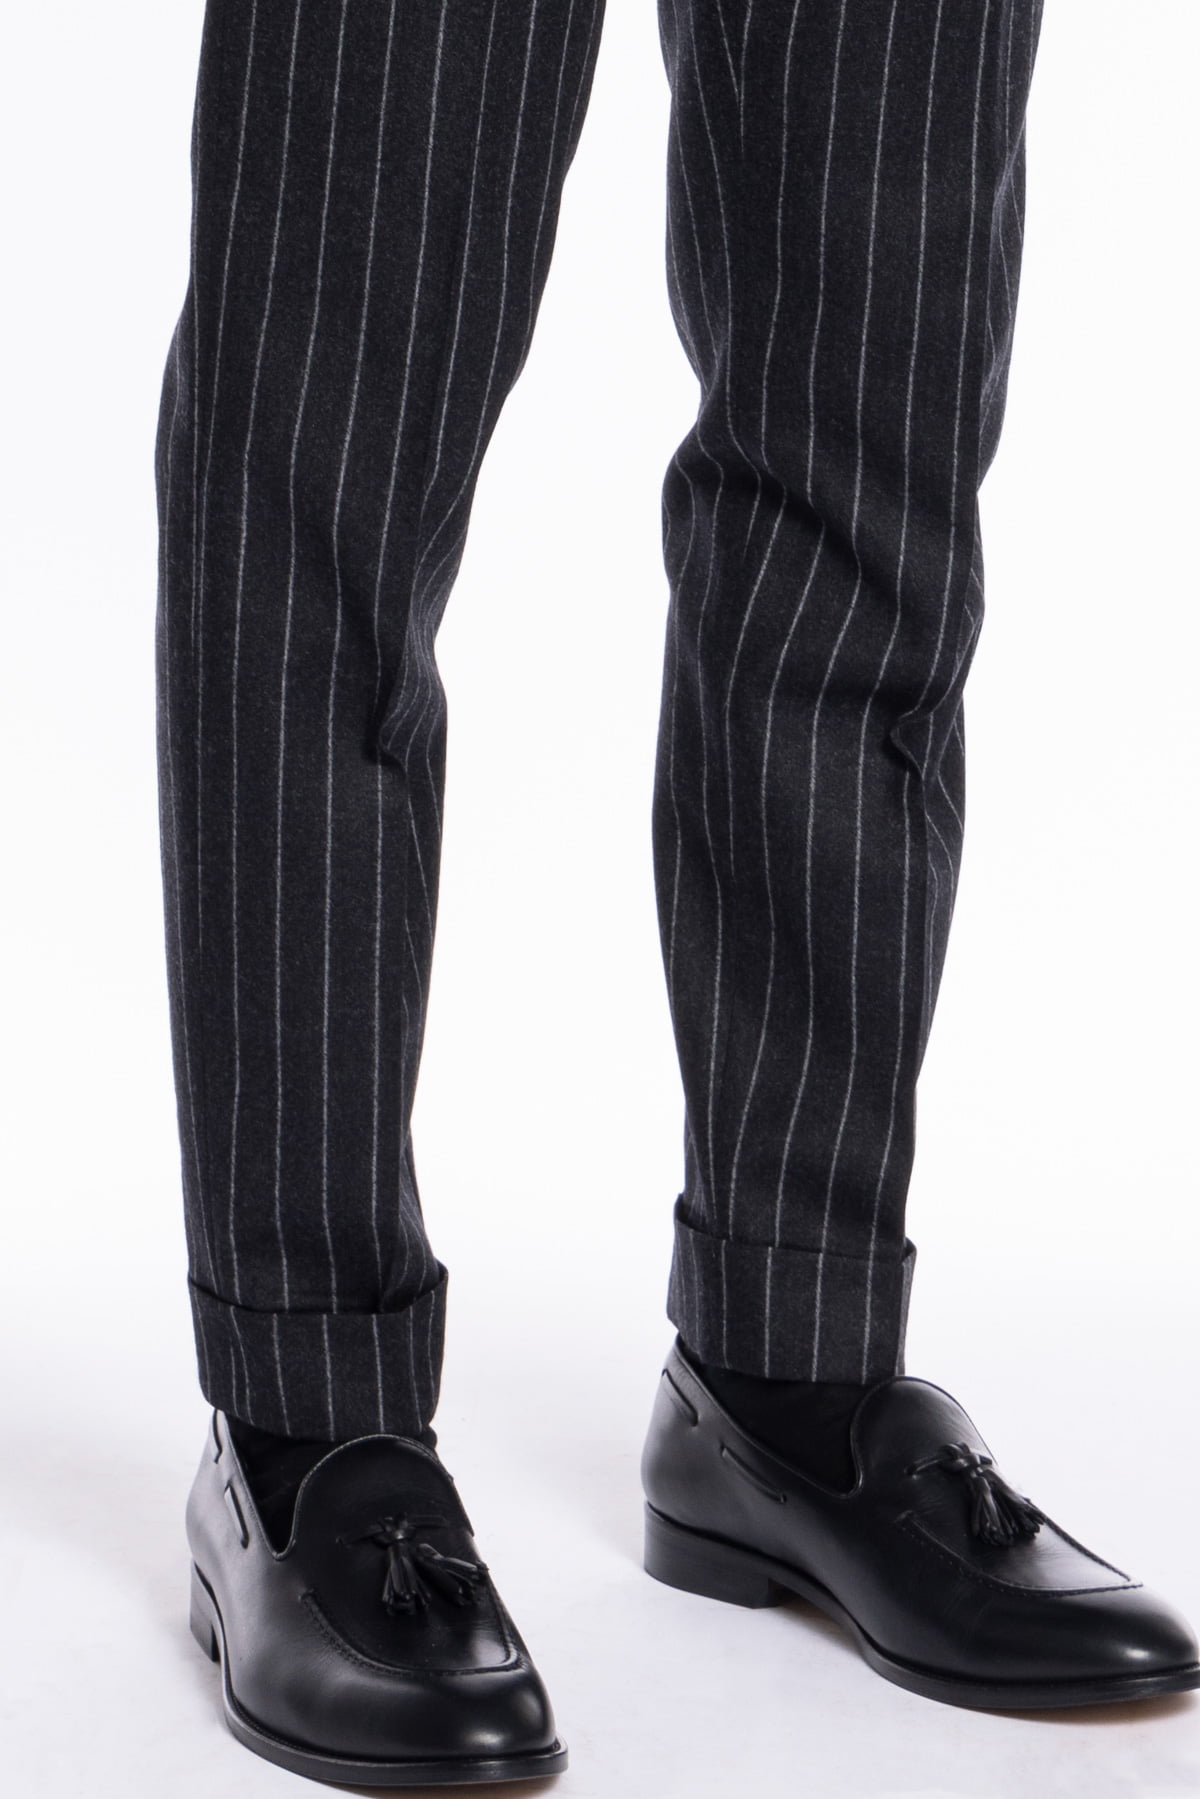 Pantalone uomo nero gessato in lana e cashmere chiusura prolungata doppia pinces Bristol Tessuti Napoli